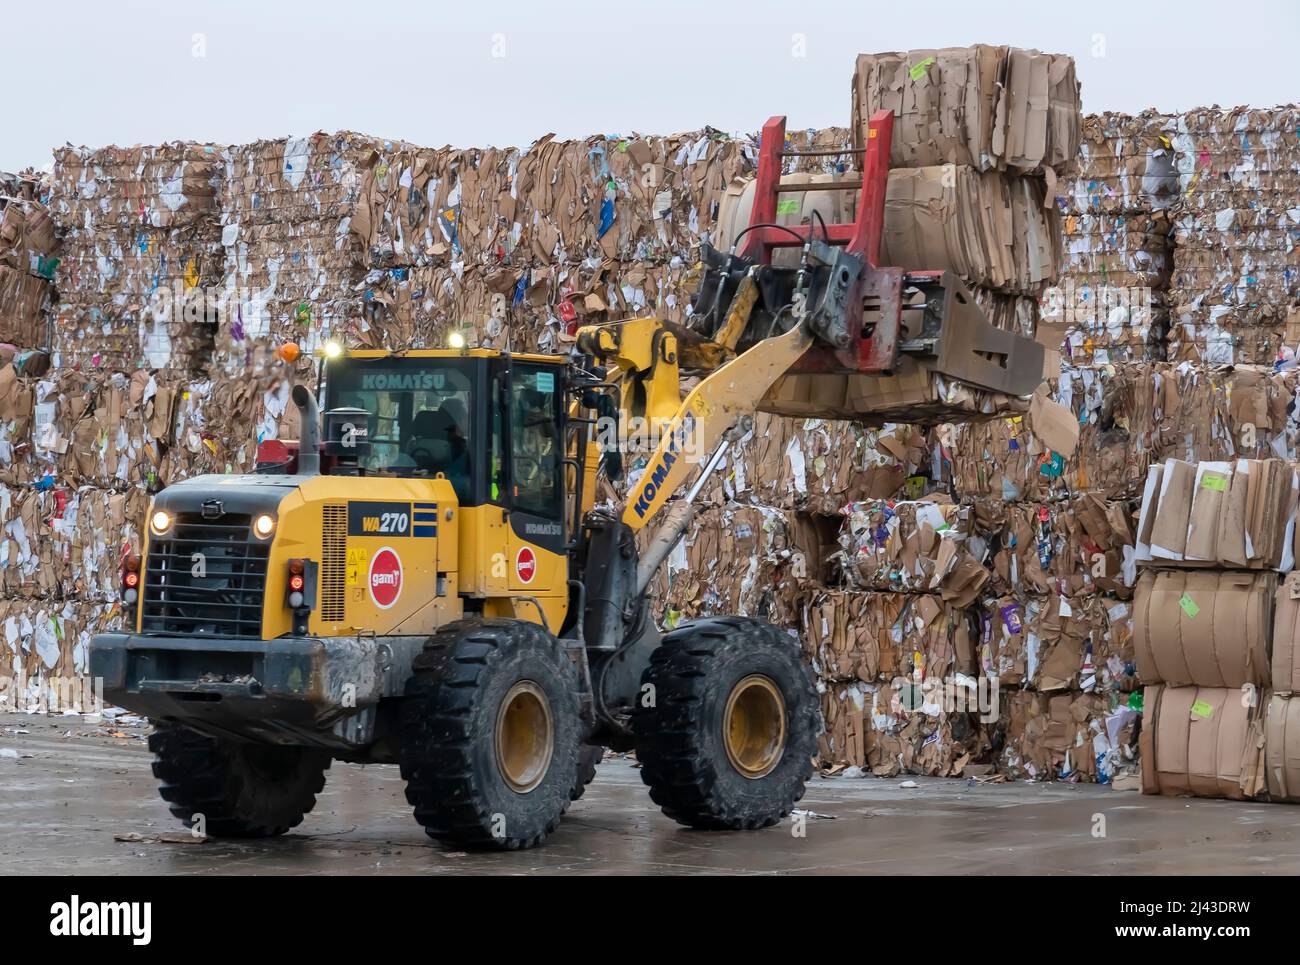 Machinerie lourde travaillant avec du papier recyclé dans une usine de recyclage industriel. Banque D'Images